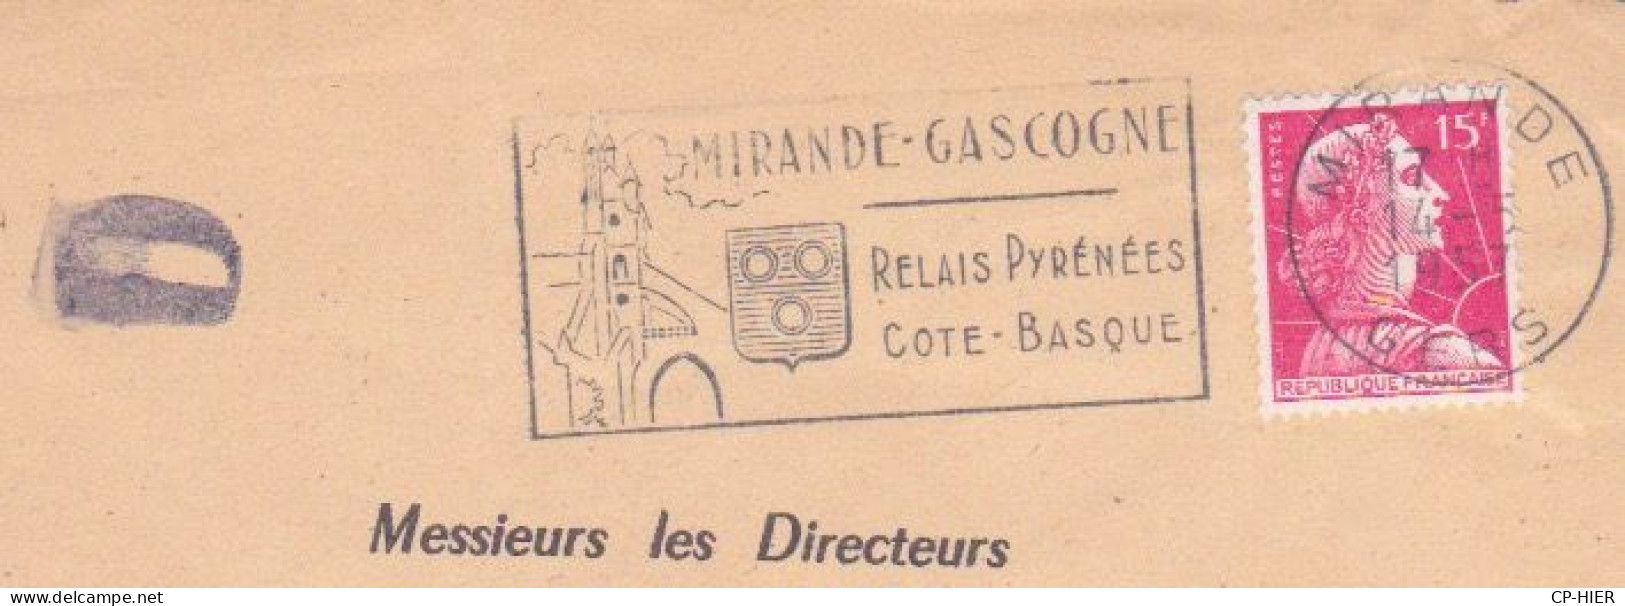 FRANCE - FLAMME  MIRANDE GASCOGNE - RELAIS PYRENEES COTE BASQUE - LETTRE D - ADRESSE CONTENTIEUX EUROPEEN PARIS - Mechanical Postmarks (Advertisement)